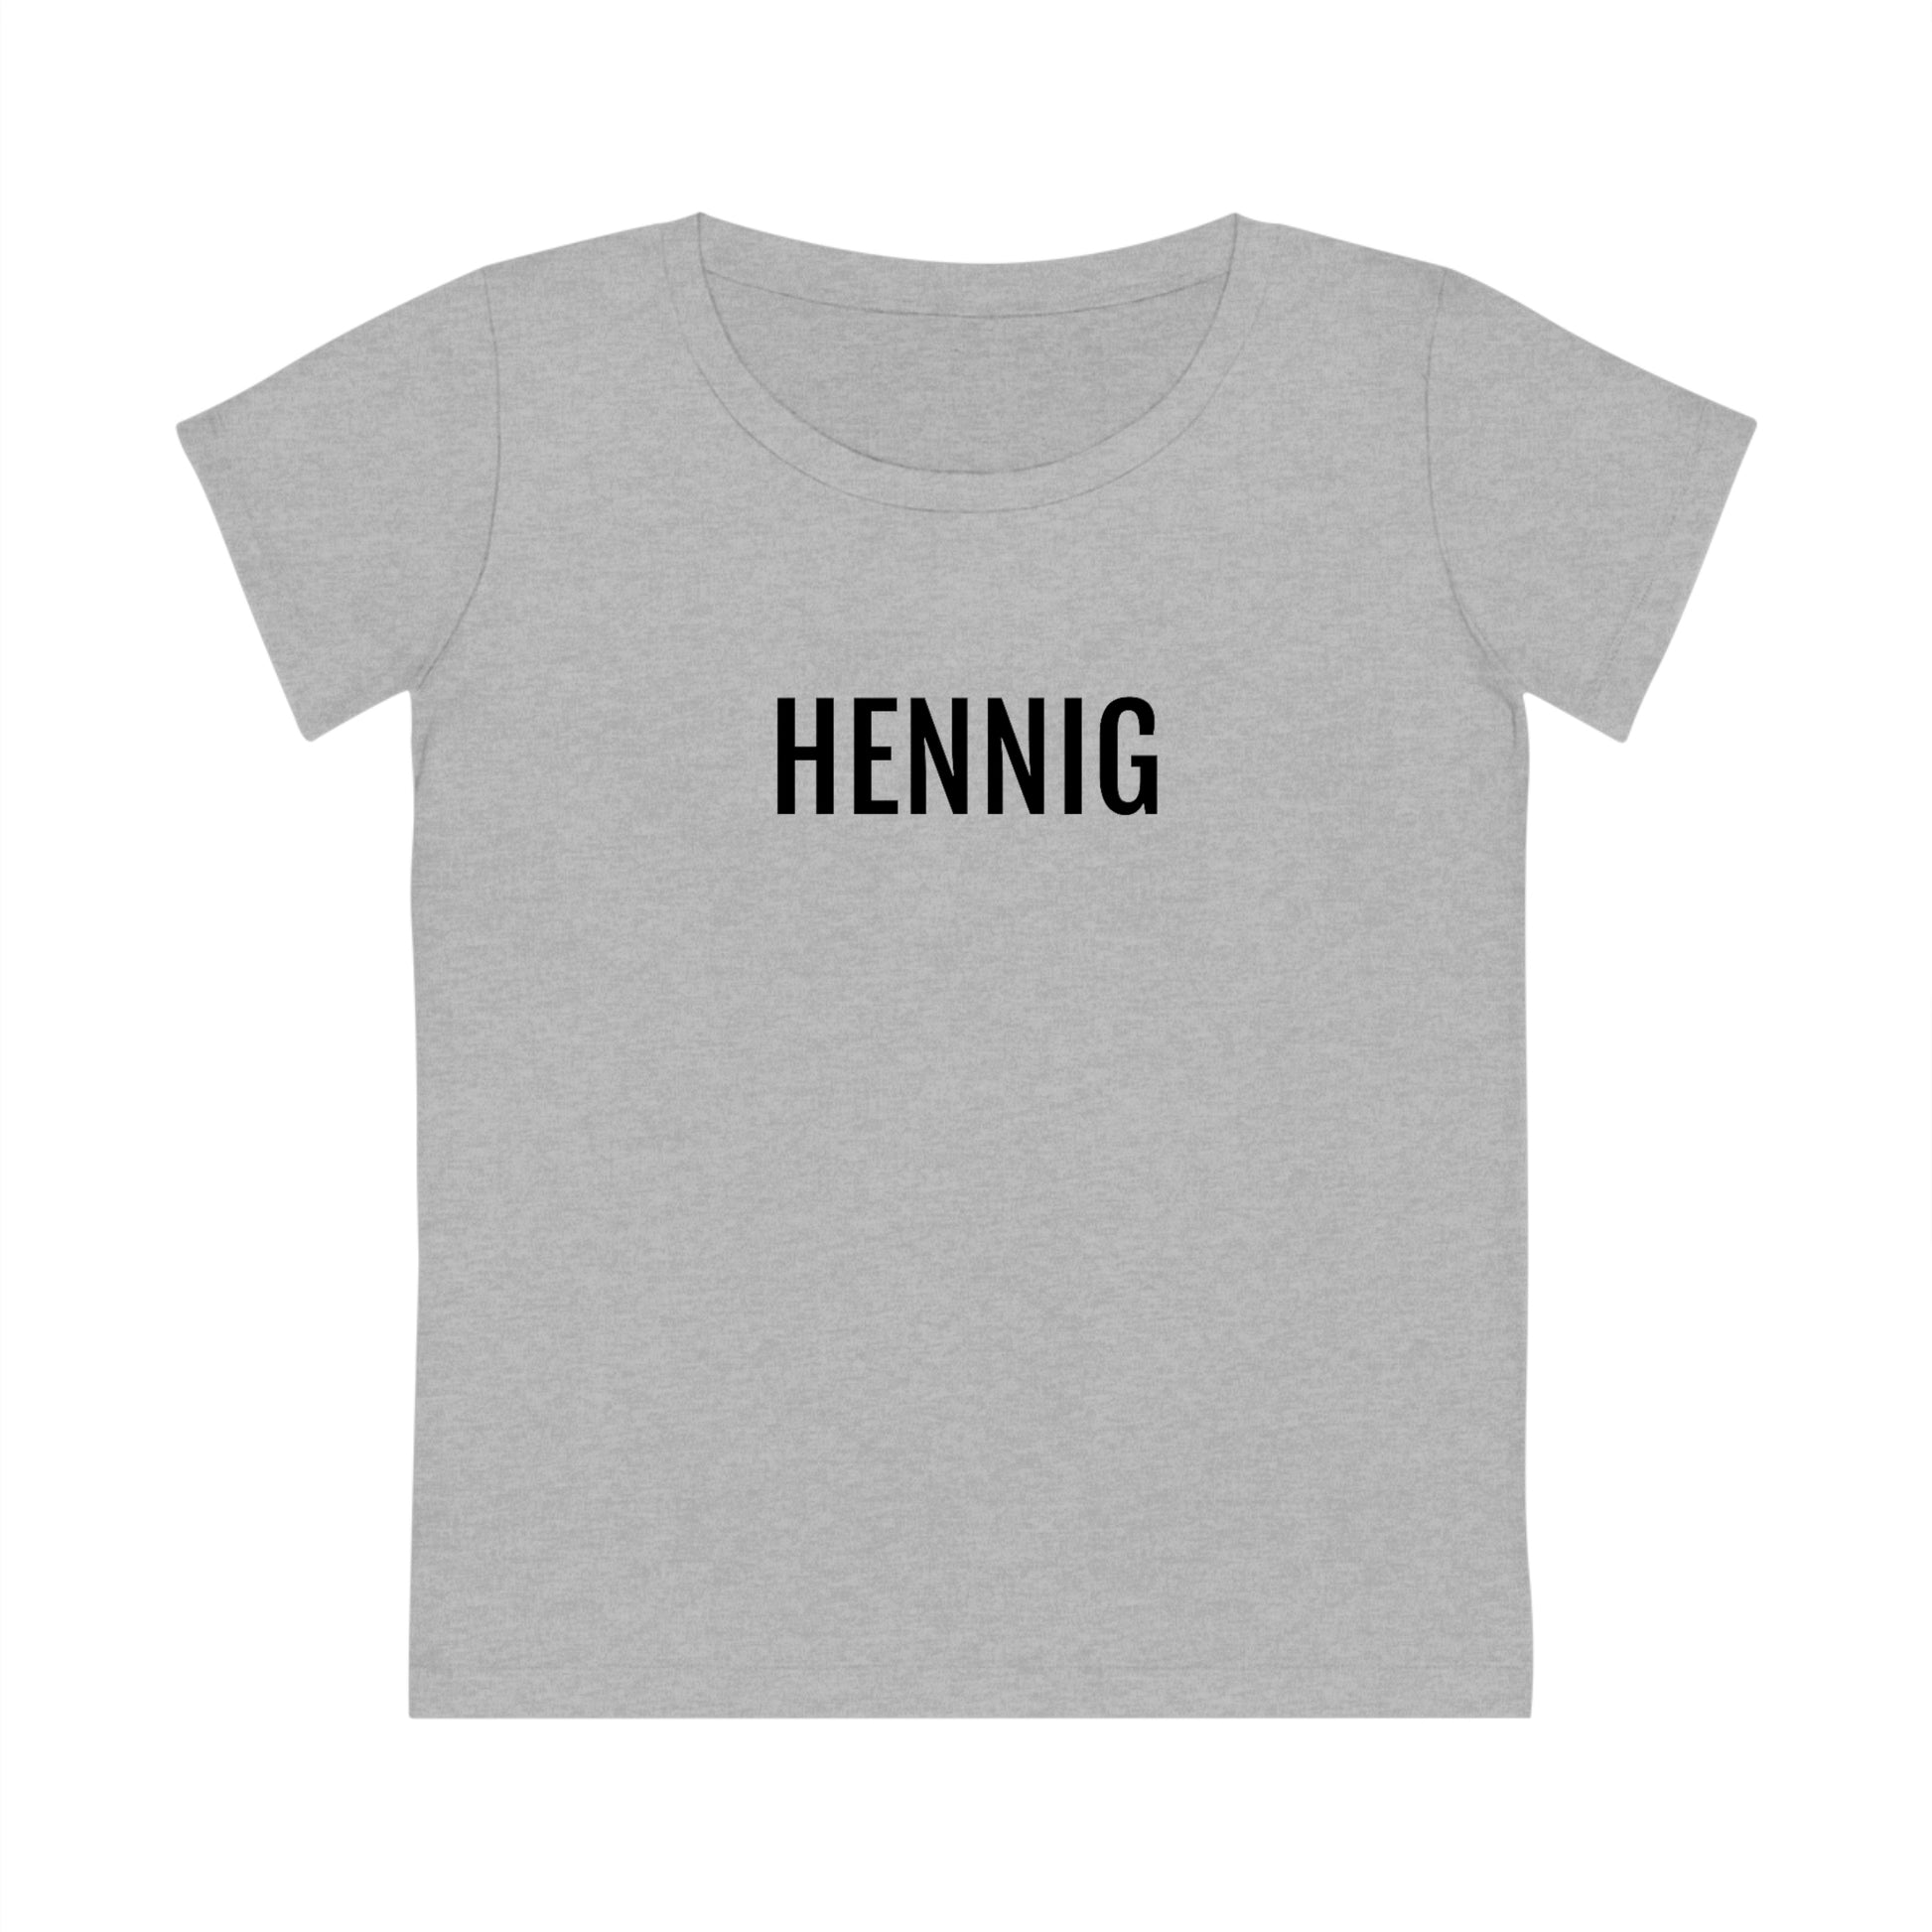 HENNIG | Dames T-Shirt uit Limburg - Grijs